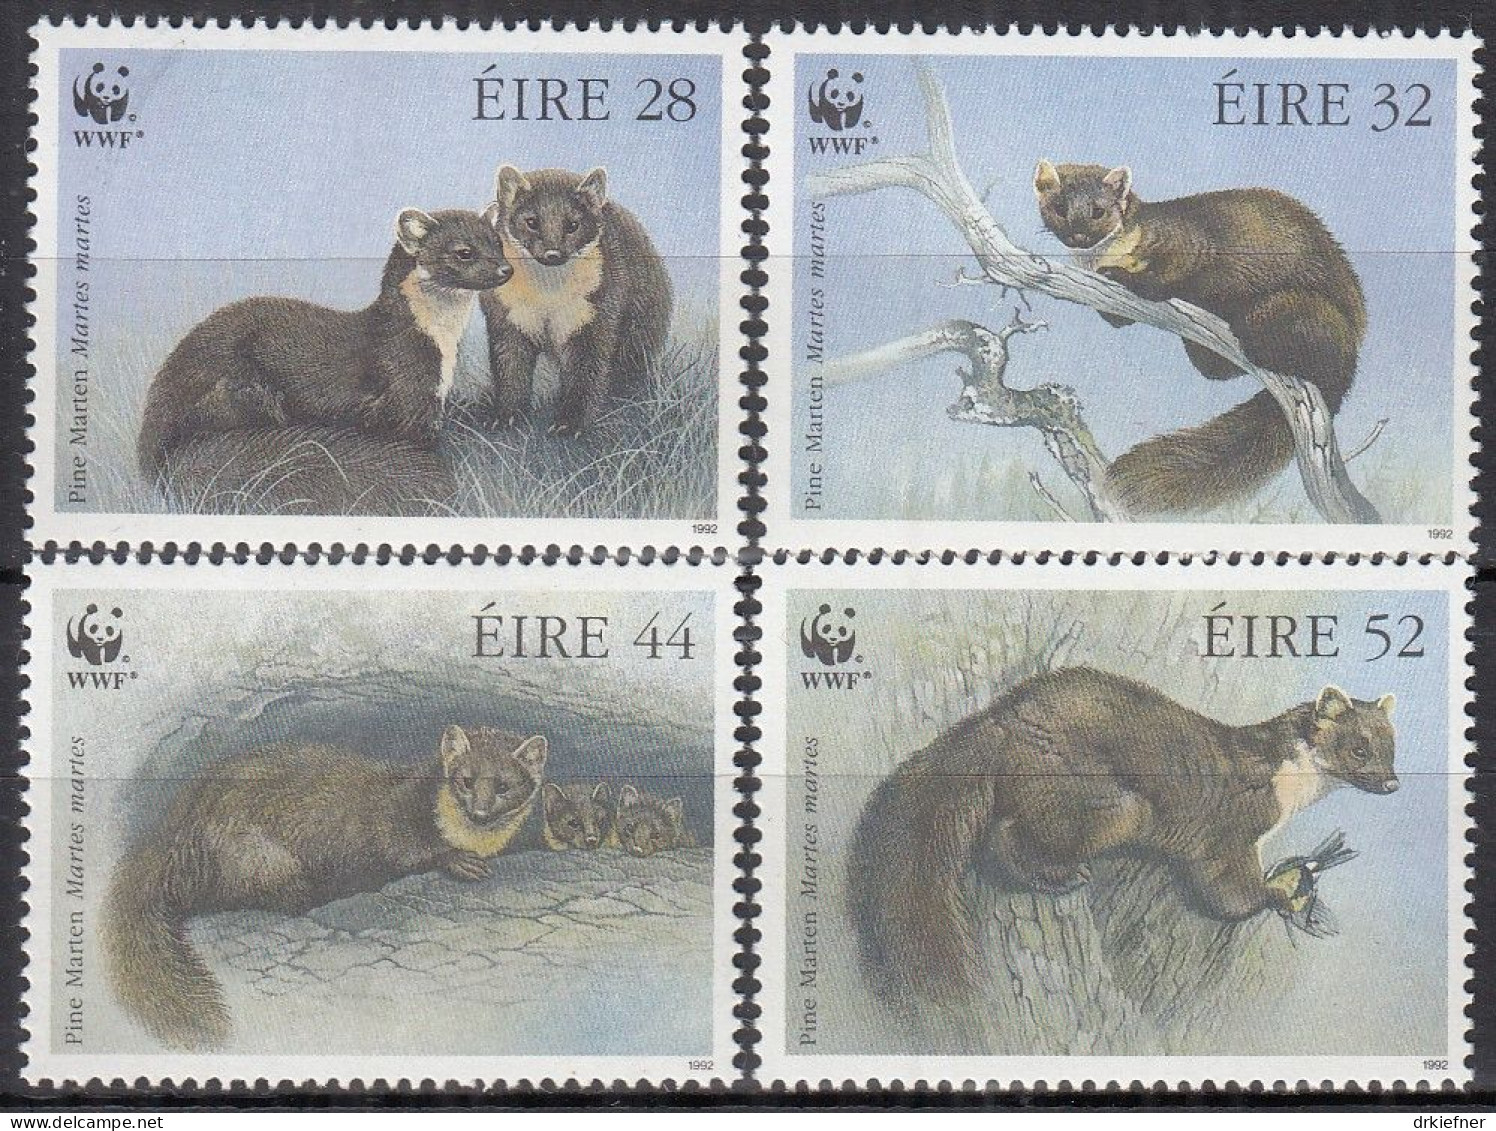 IRLAND  798-801, Postfrisch **, WWF, Weltweiter Naturschutz: Baummarder, 1992 - Nuovi